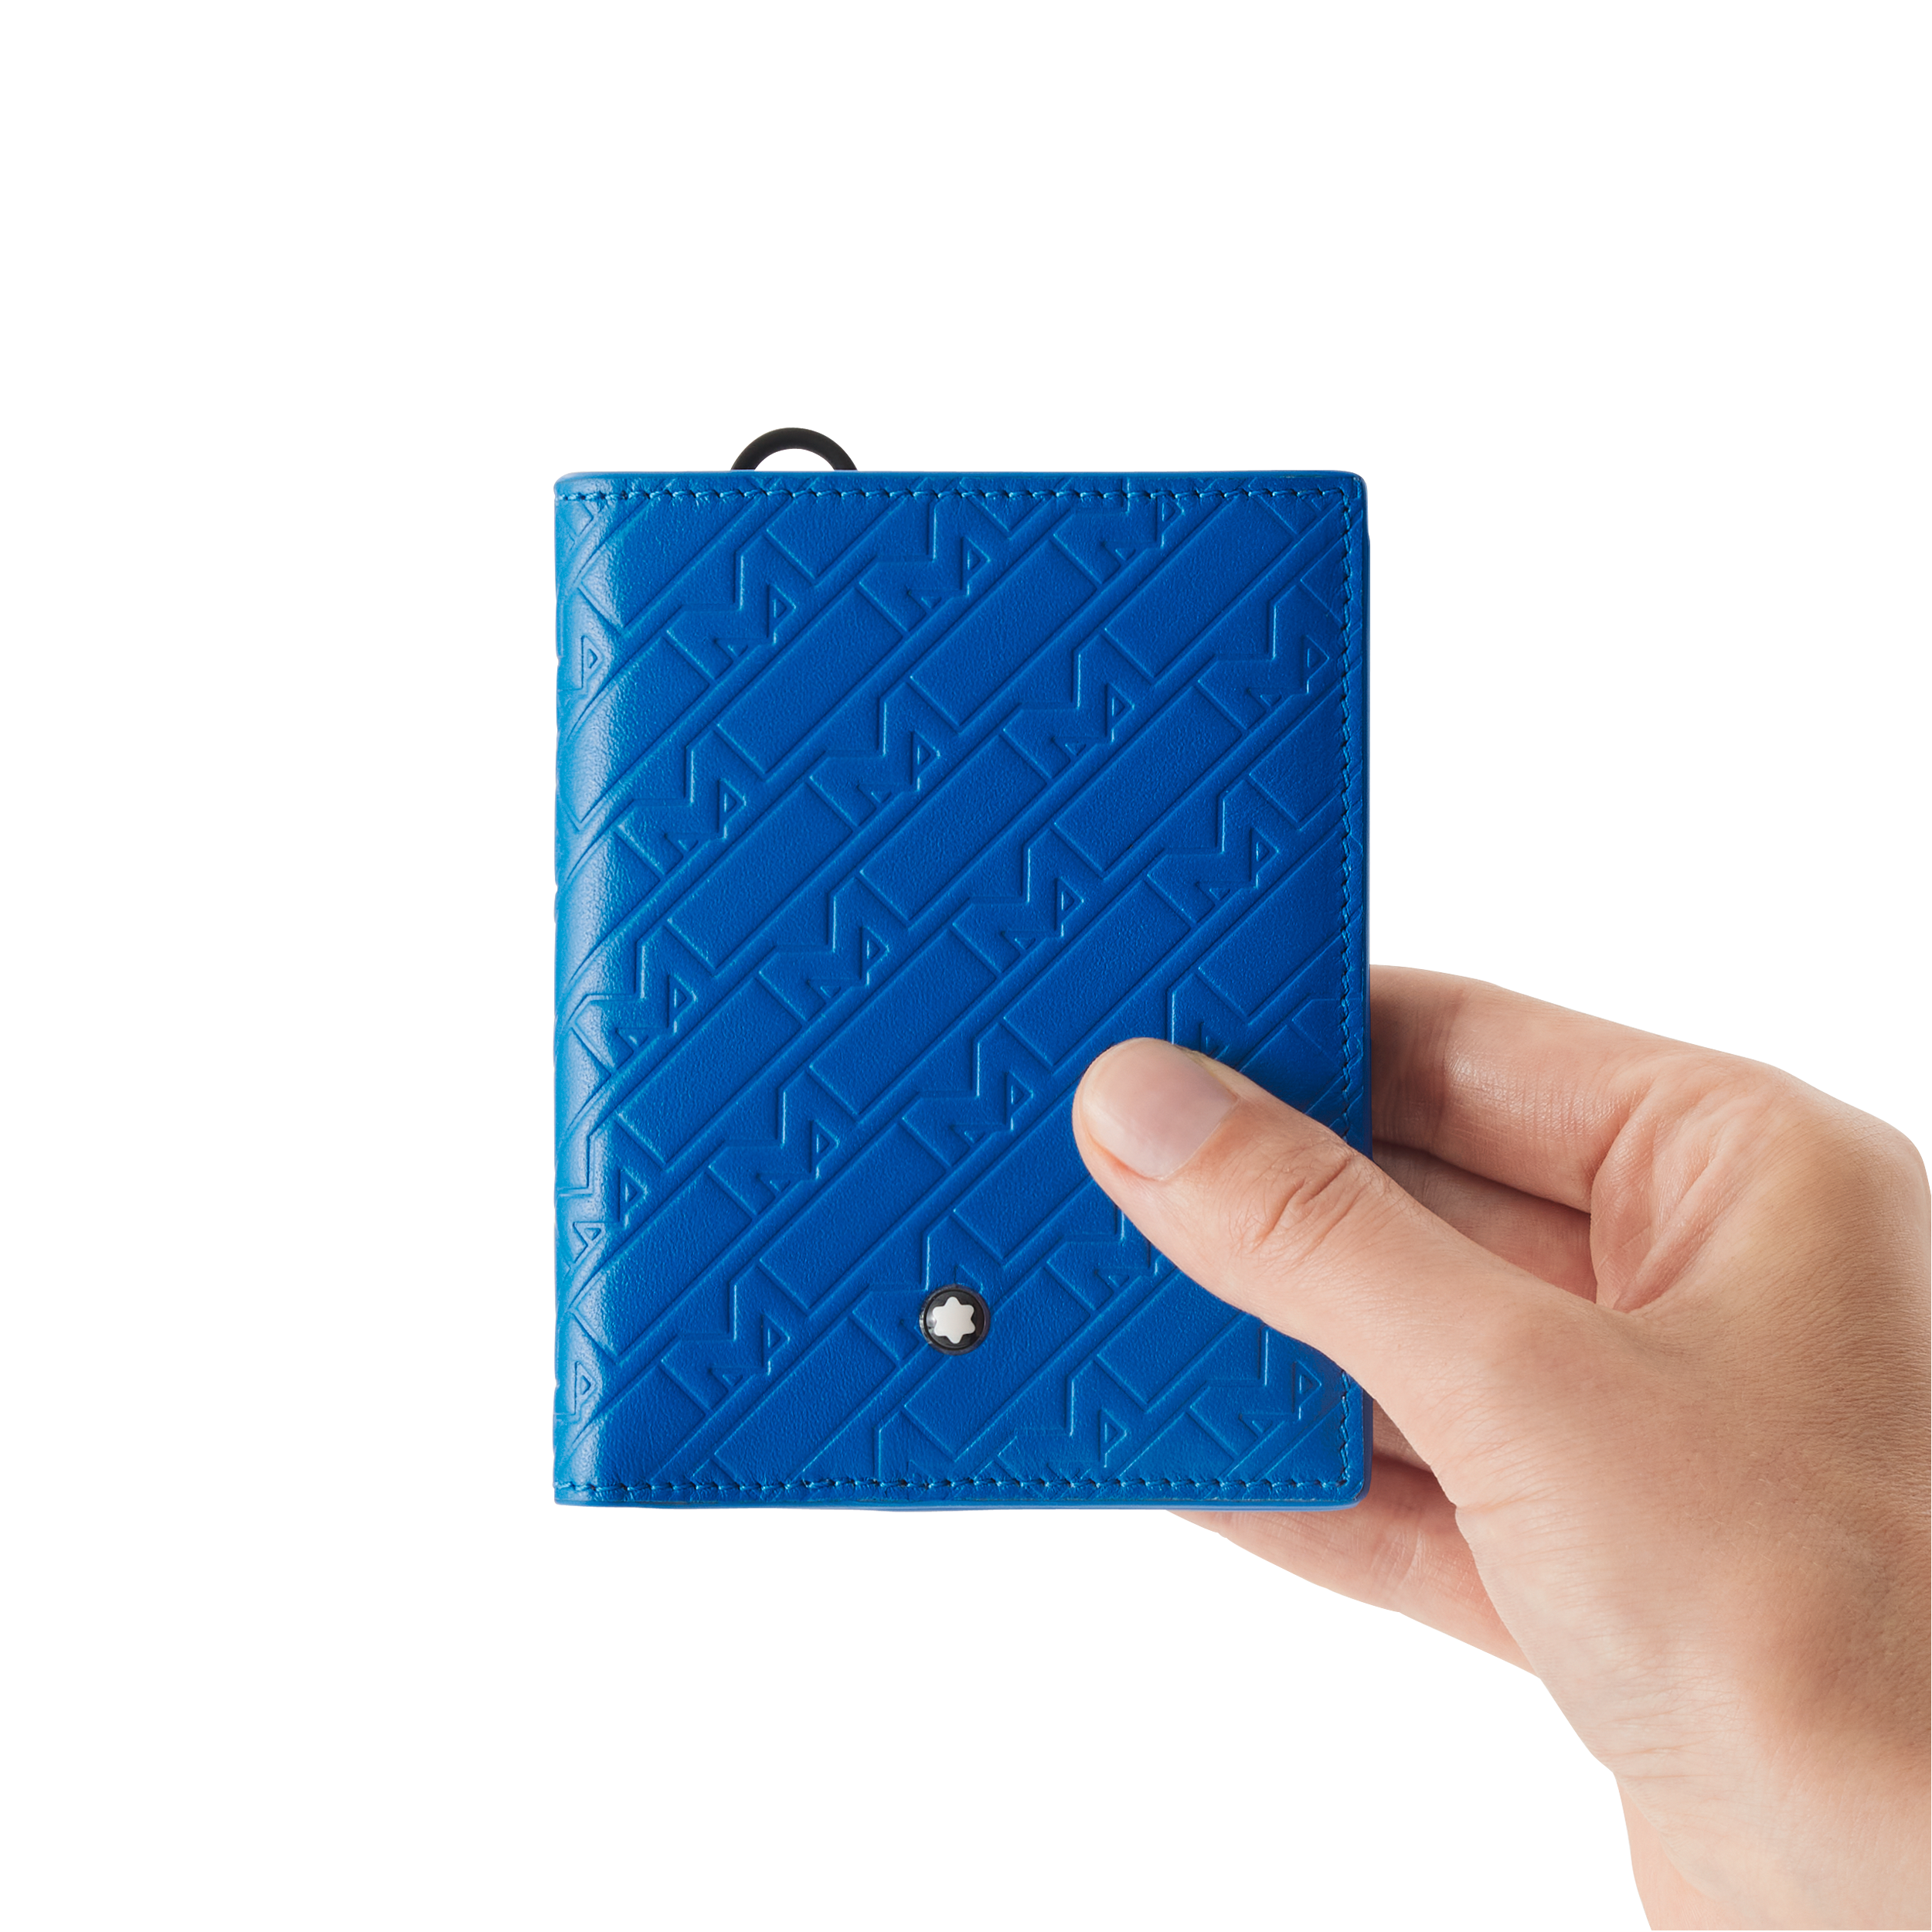 Montblanc M_Gram 4810 compact wallet 6cc, image 6